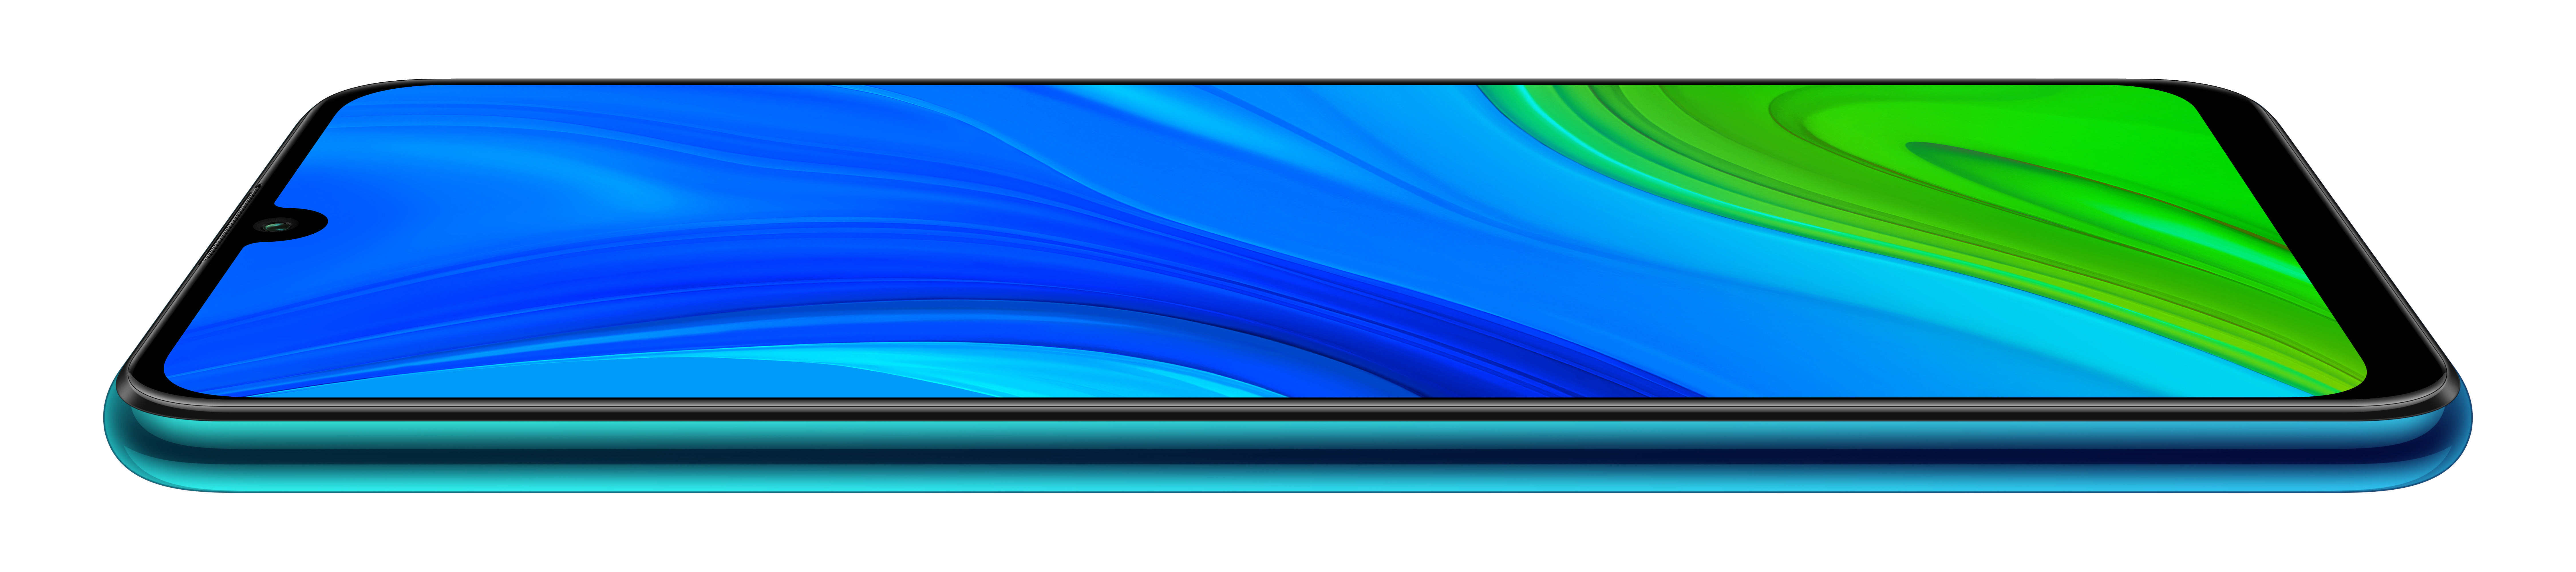 Blue 128 smart Aurora Dual GB SIM 2020 HUAWEI P